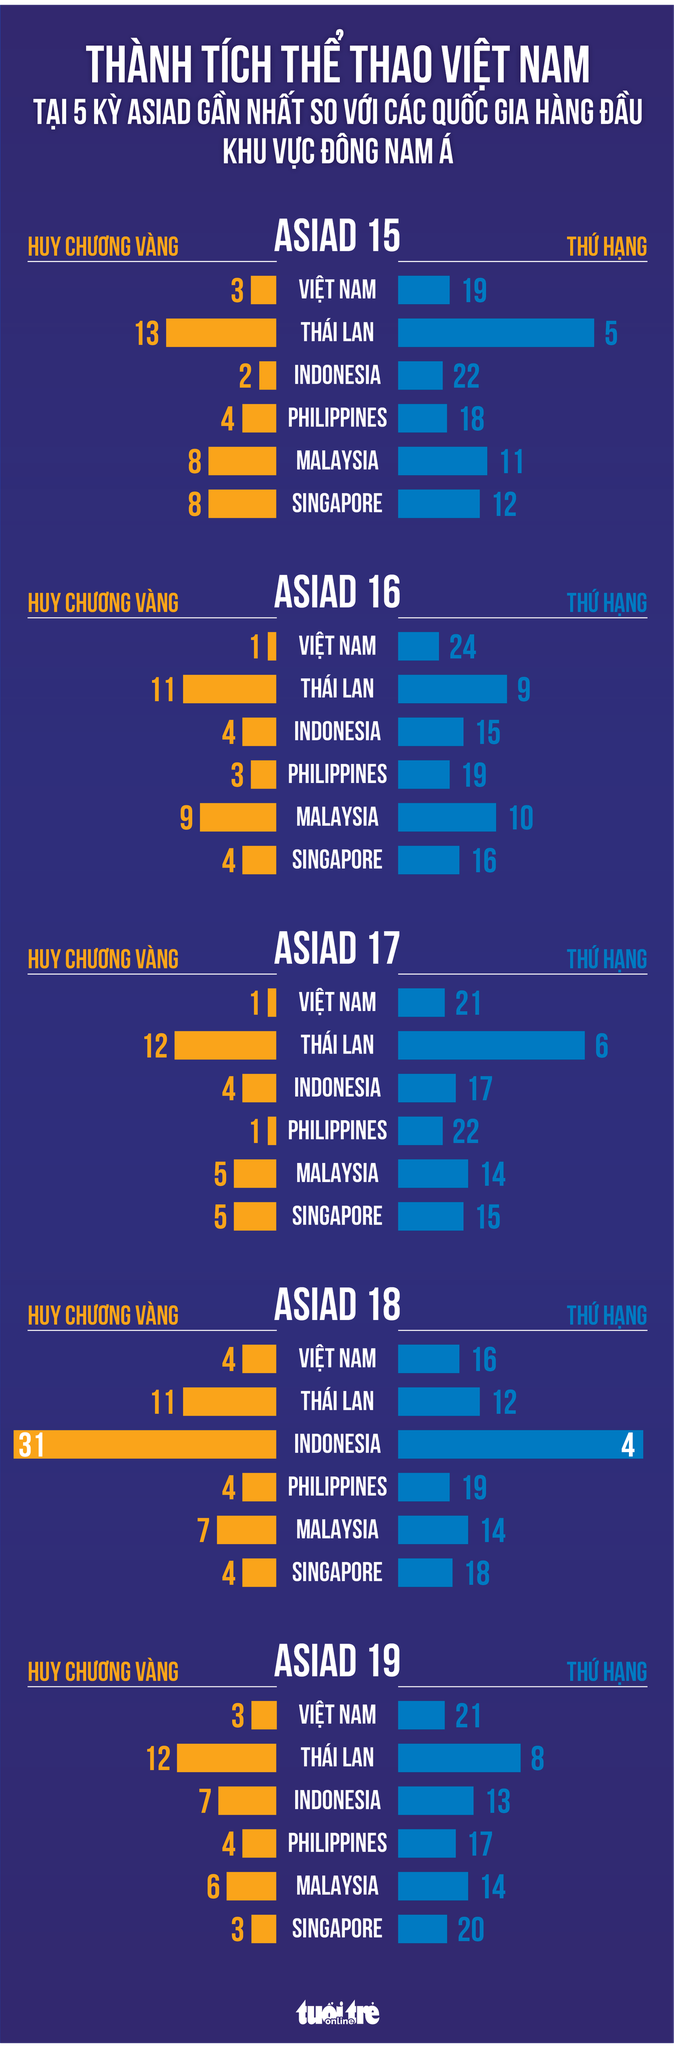 Thành tích của thể thao Việt Nam so với các quốc gia Đông Nam Á - Đồ họa: AN BÌNH